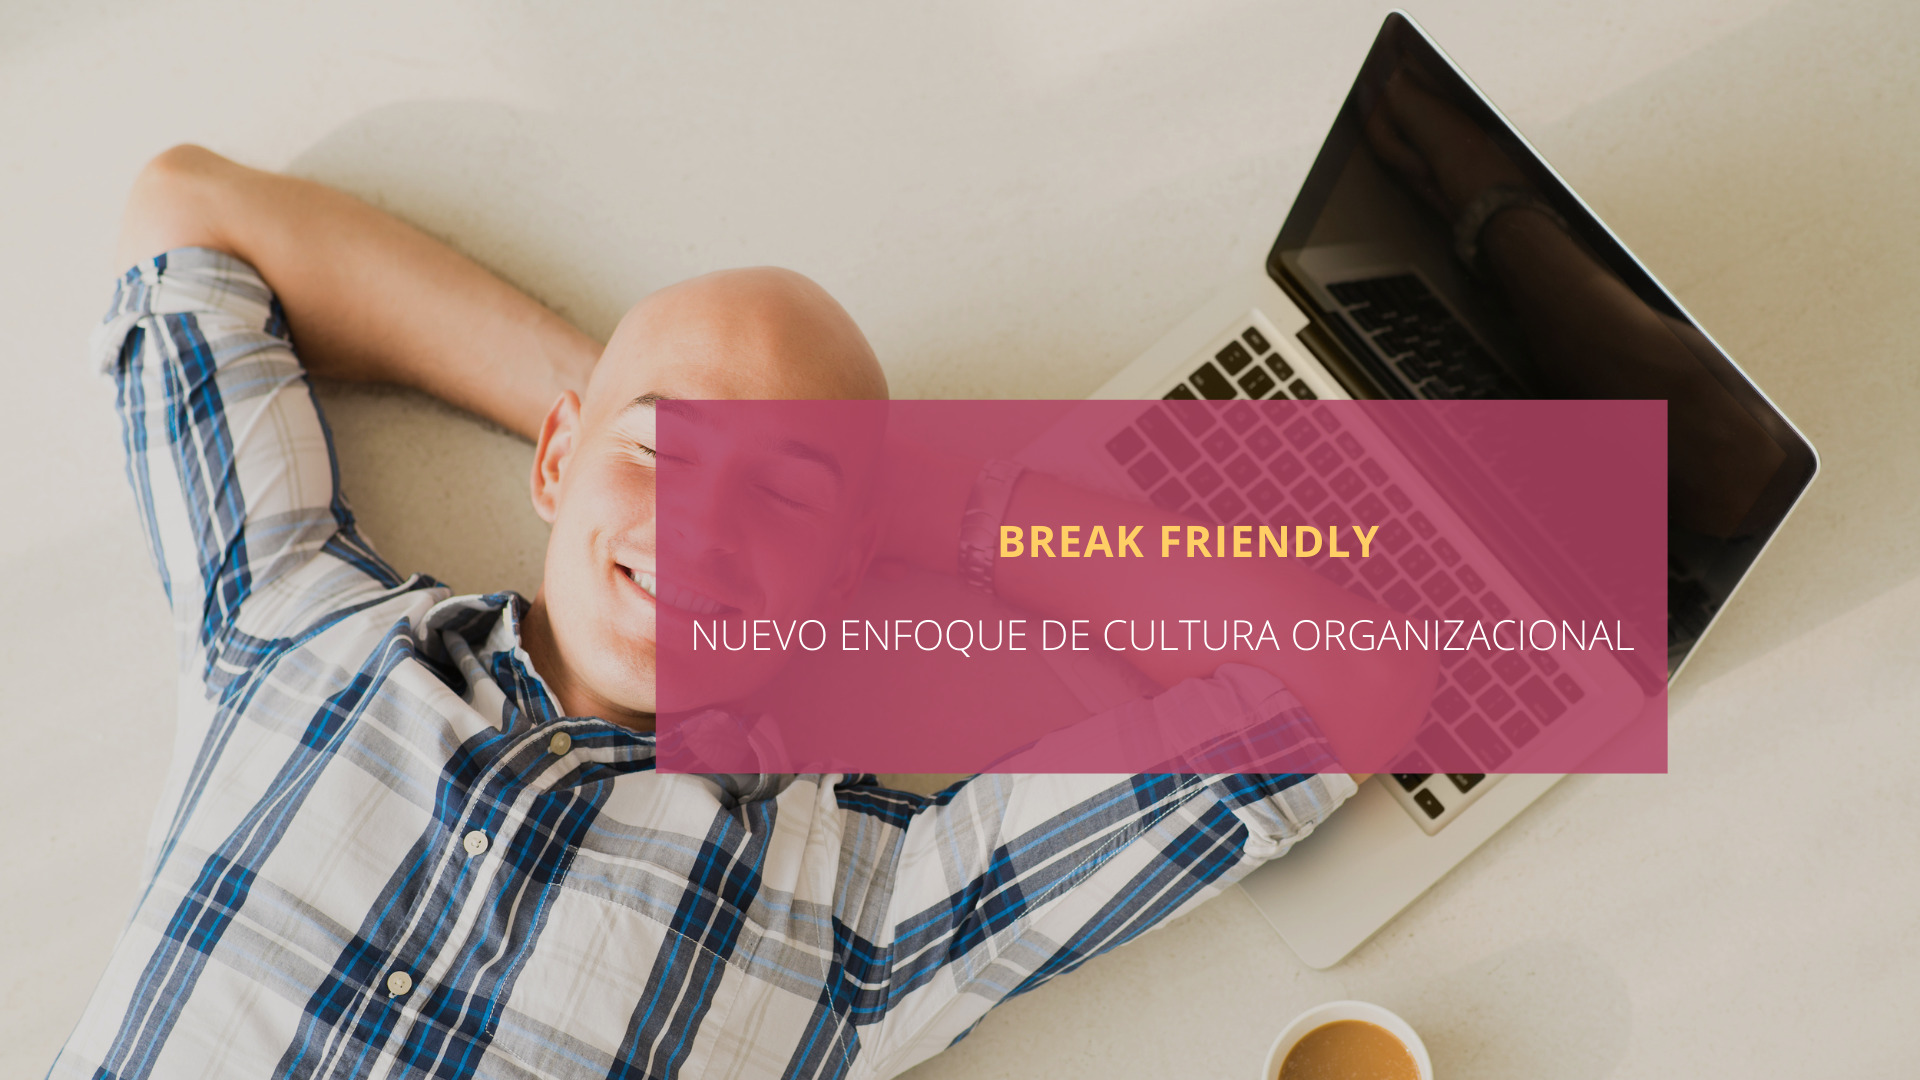 Break friendly: nueva cultura organizacional